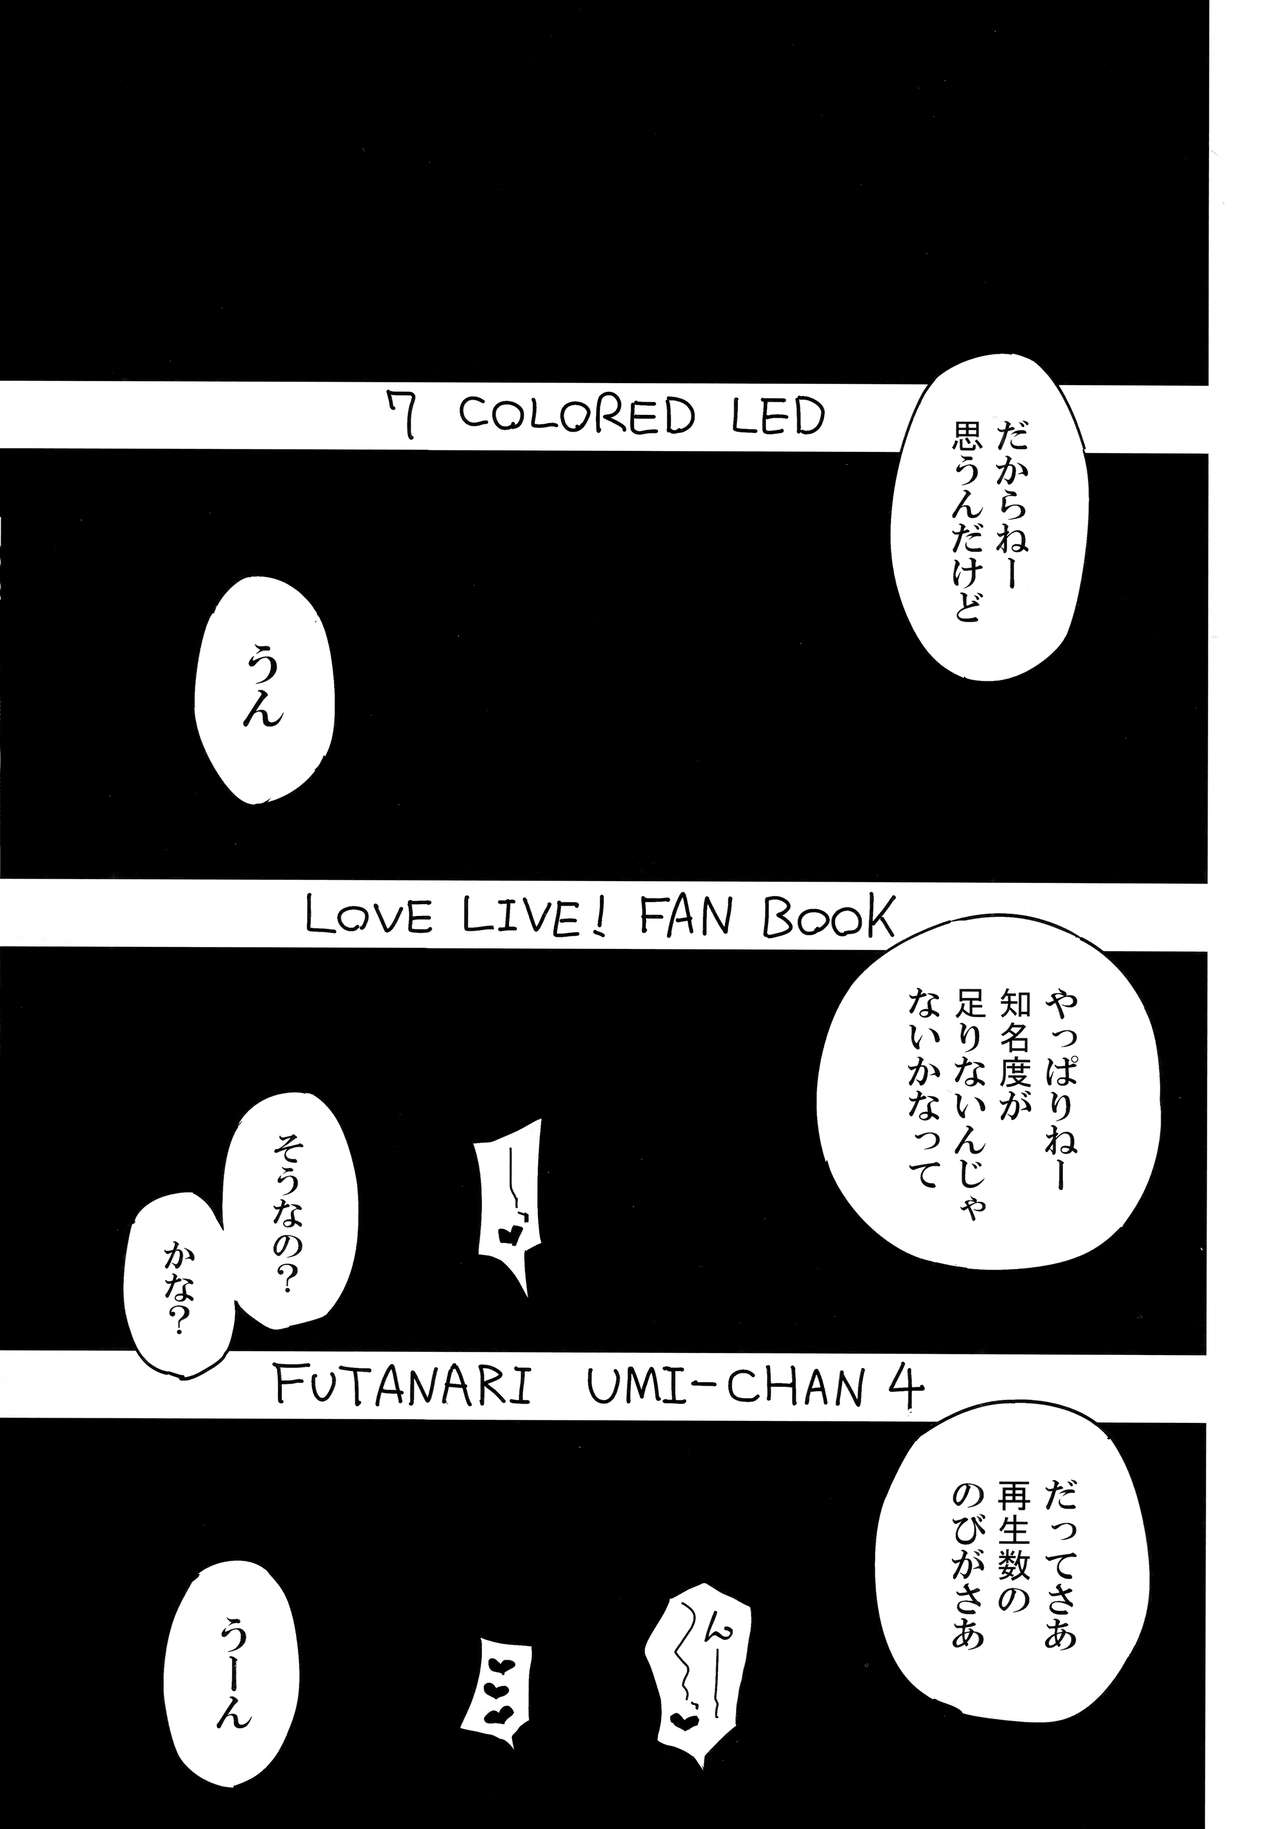 (Bokura no Love Live! 19) [7 Colored LED (Nekonso)] Futanari Umi-chan 4 (Love Live!) (僕らのラブライブ! 19) [虹色発光ダイオード (ねこんそ)] ふたなり海未ちゃん4 (ラブライブ!)